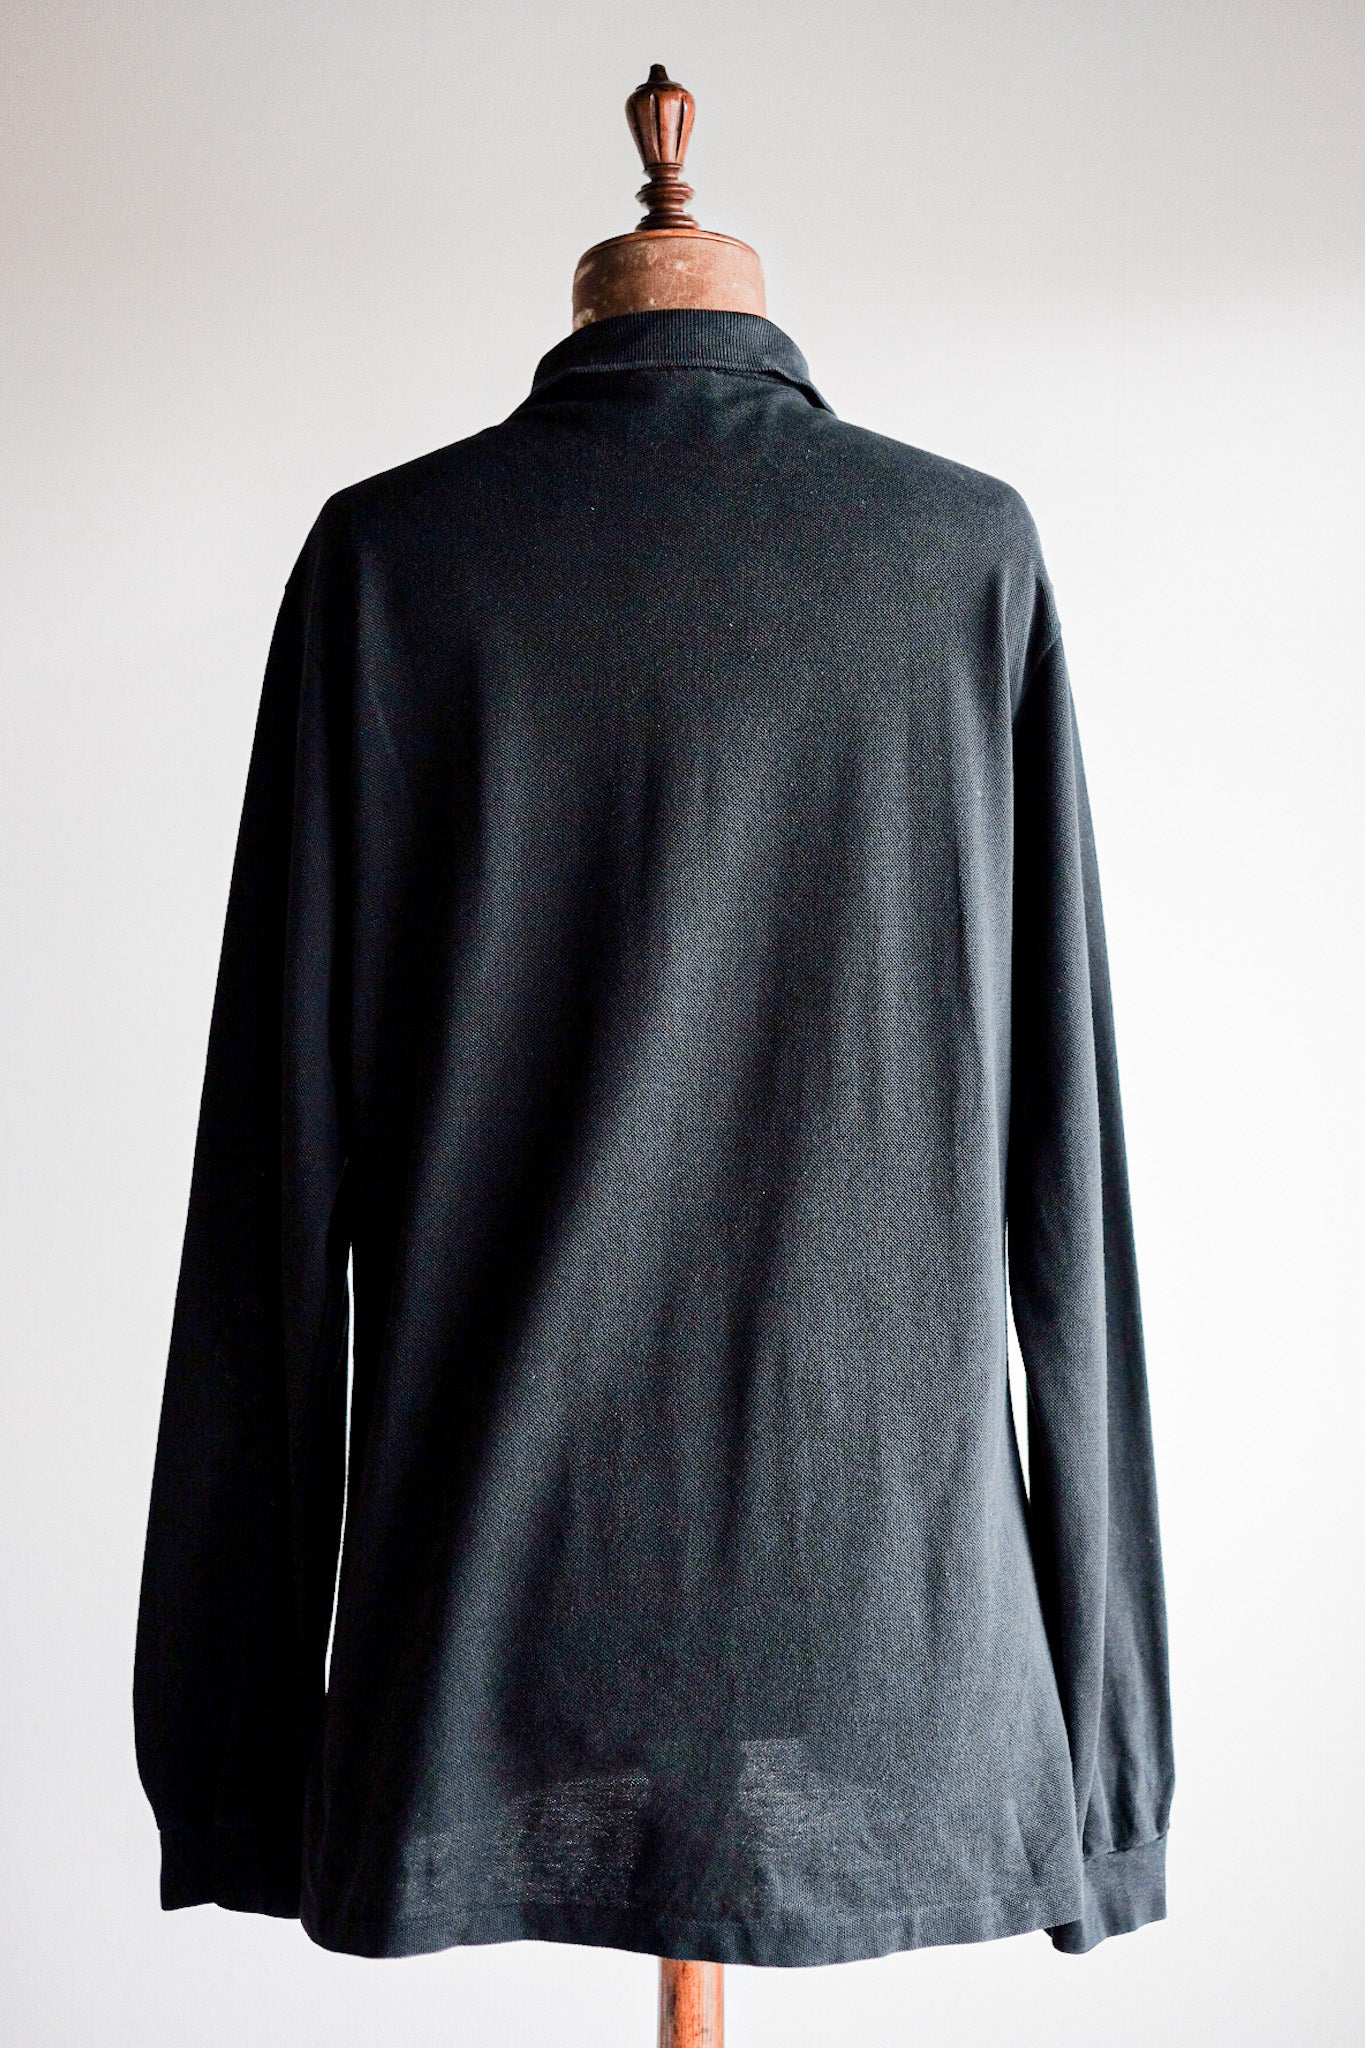 [~ 80 년대] Chemise lacoste l/s 폴로 셔츠 크기 .5 "Black"